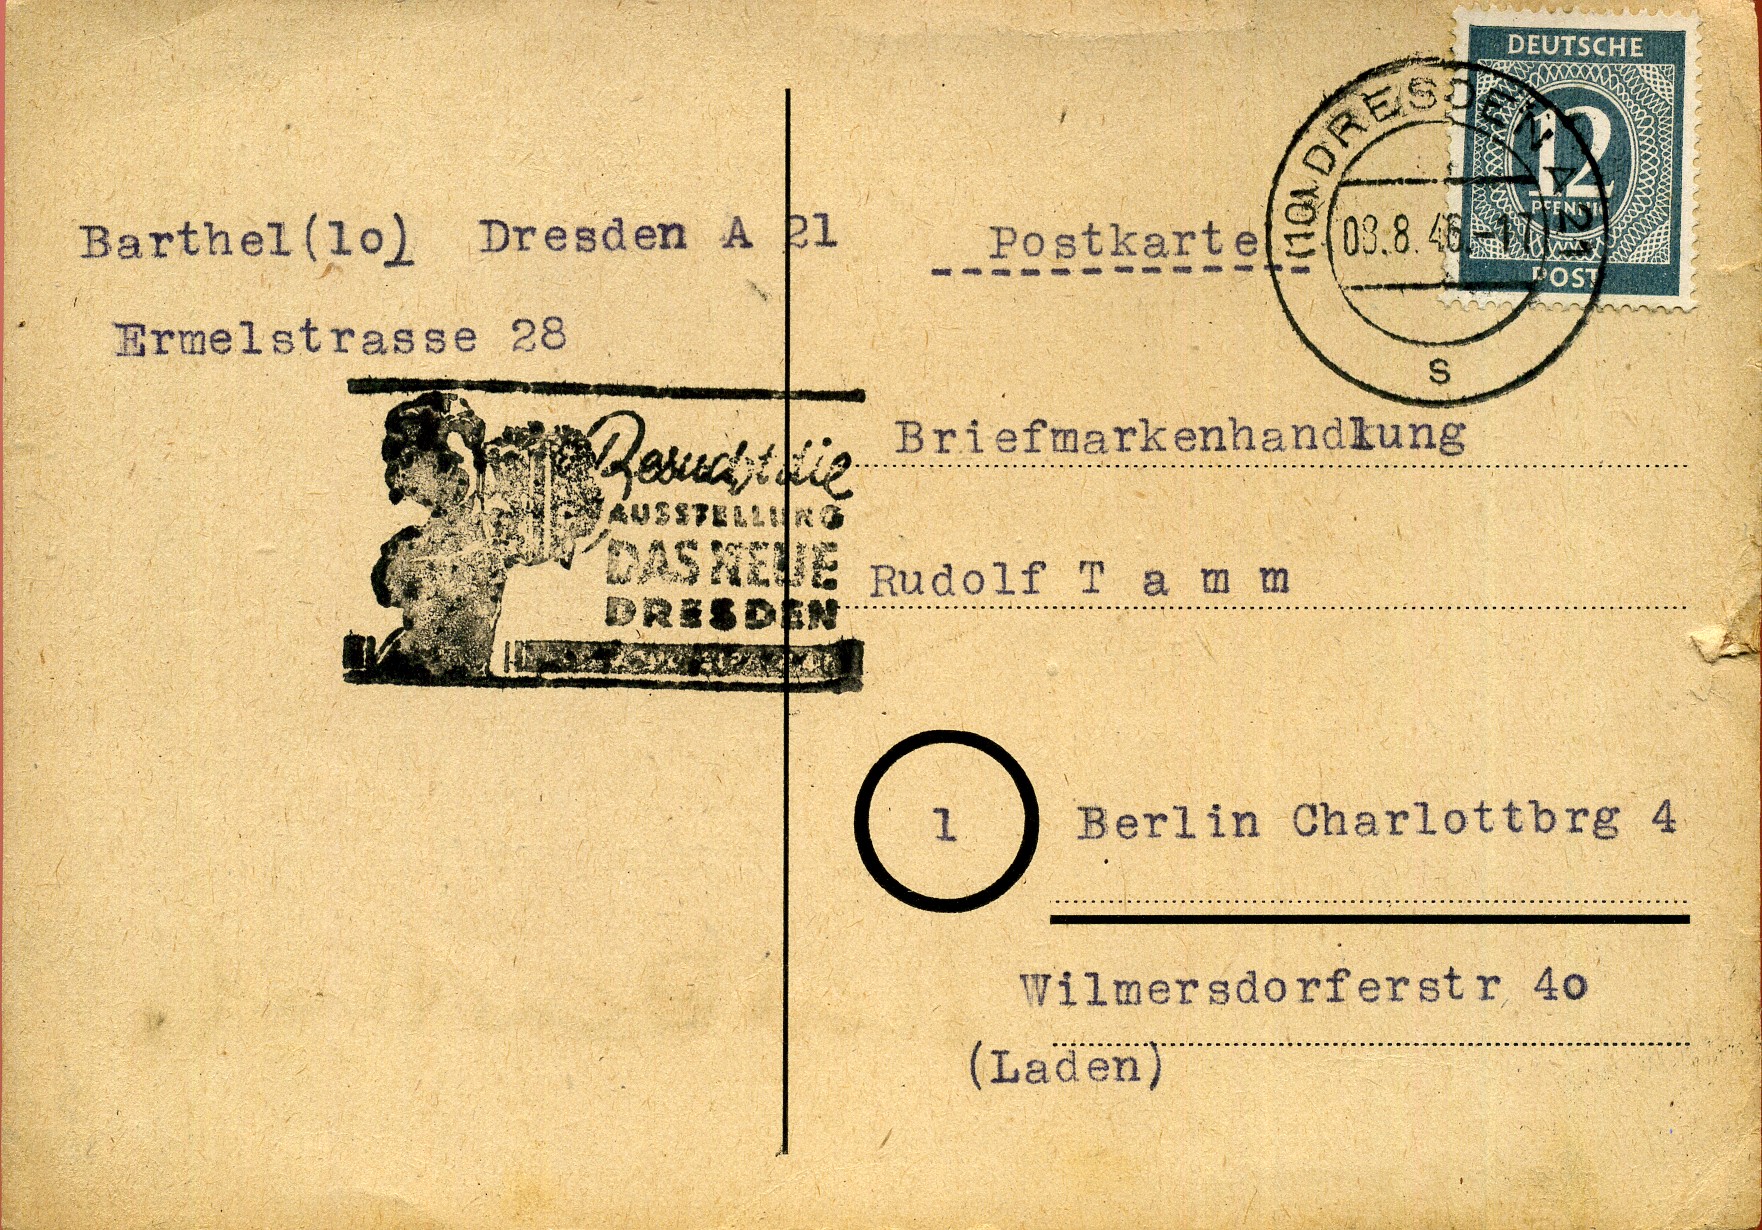 Besucht die Ausstellung Das Neue Dresden - Handstempel - schwarz - Dresden A 21